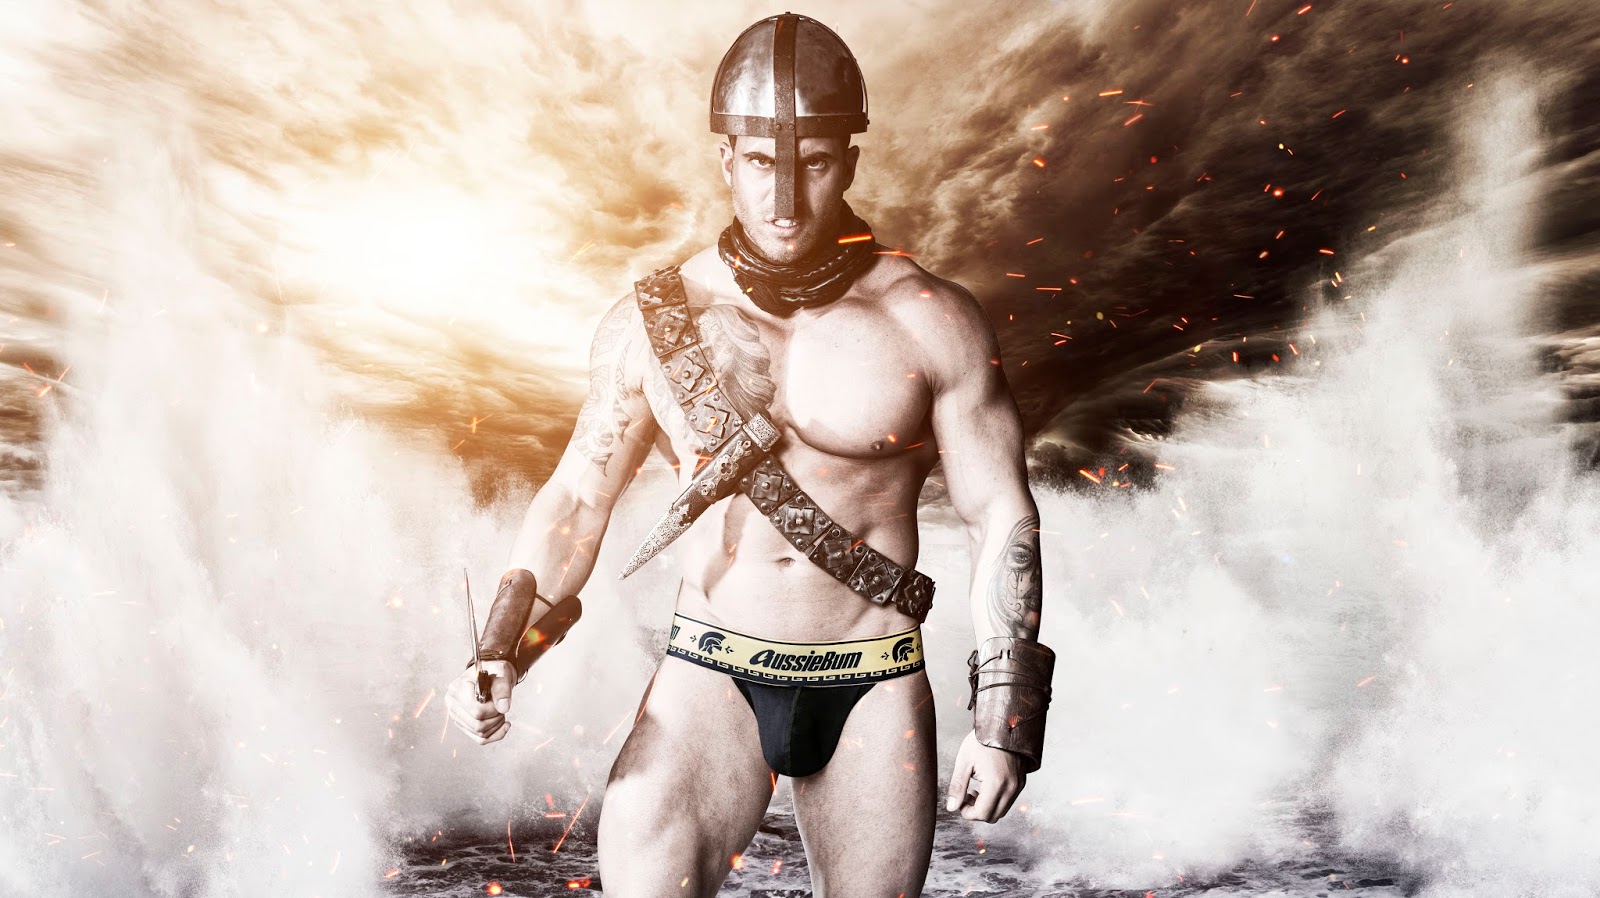 New underwear range Gladiator from aussieBum